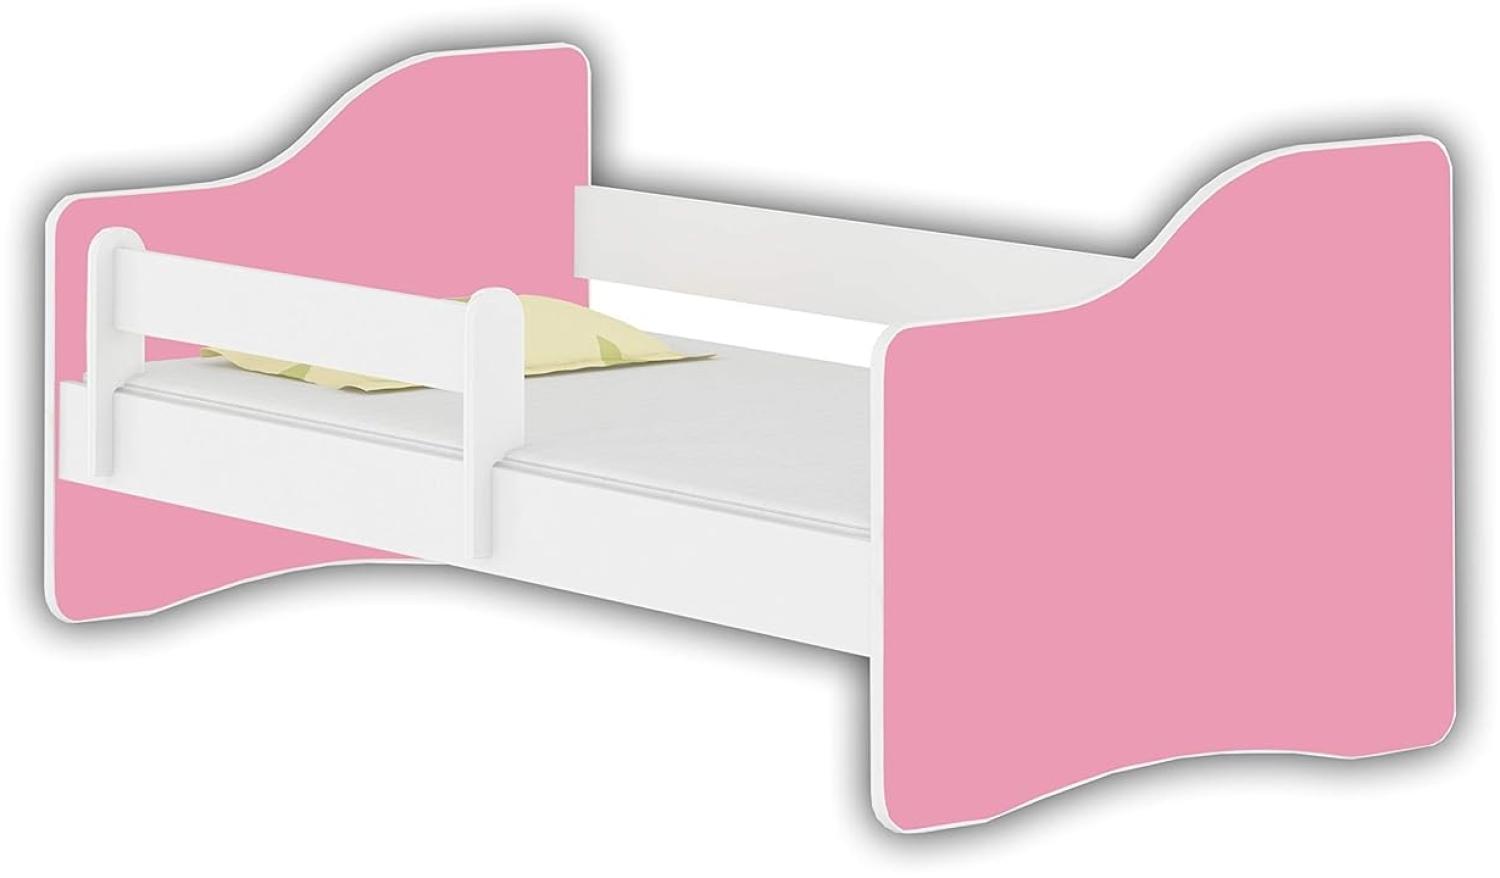 Jugendbett Kinderbett mit Einer Schublade mit Rausfallschutz und Matratze Weiß ACMA Happy 140x70 160x80 180x80 (Rosa, 160x80 cm) Bild 1